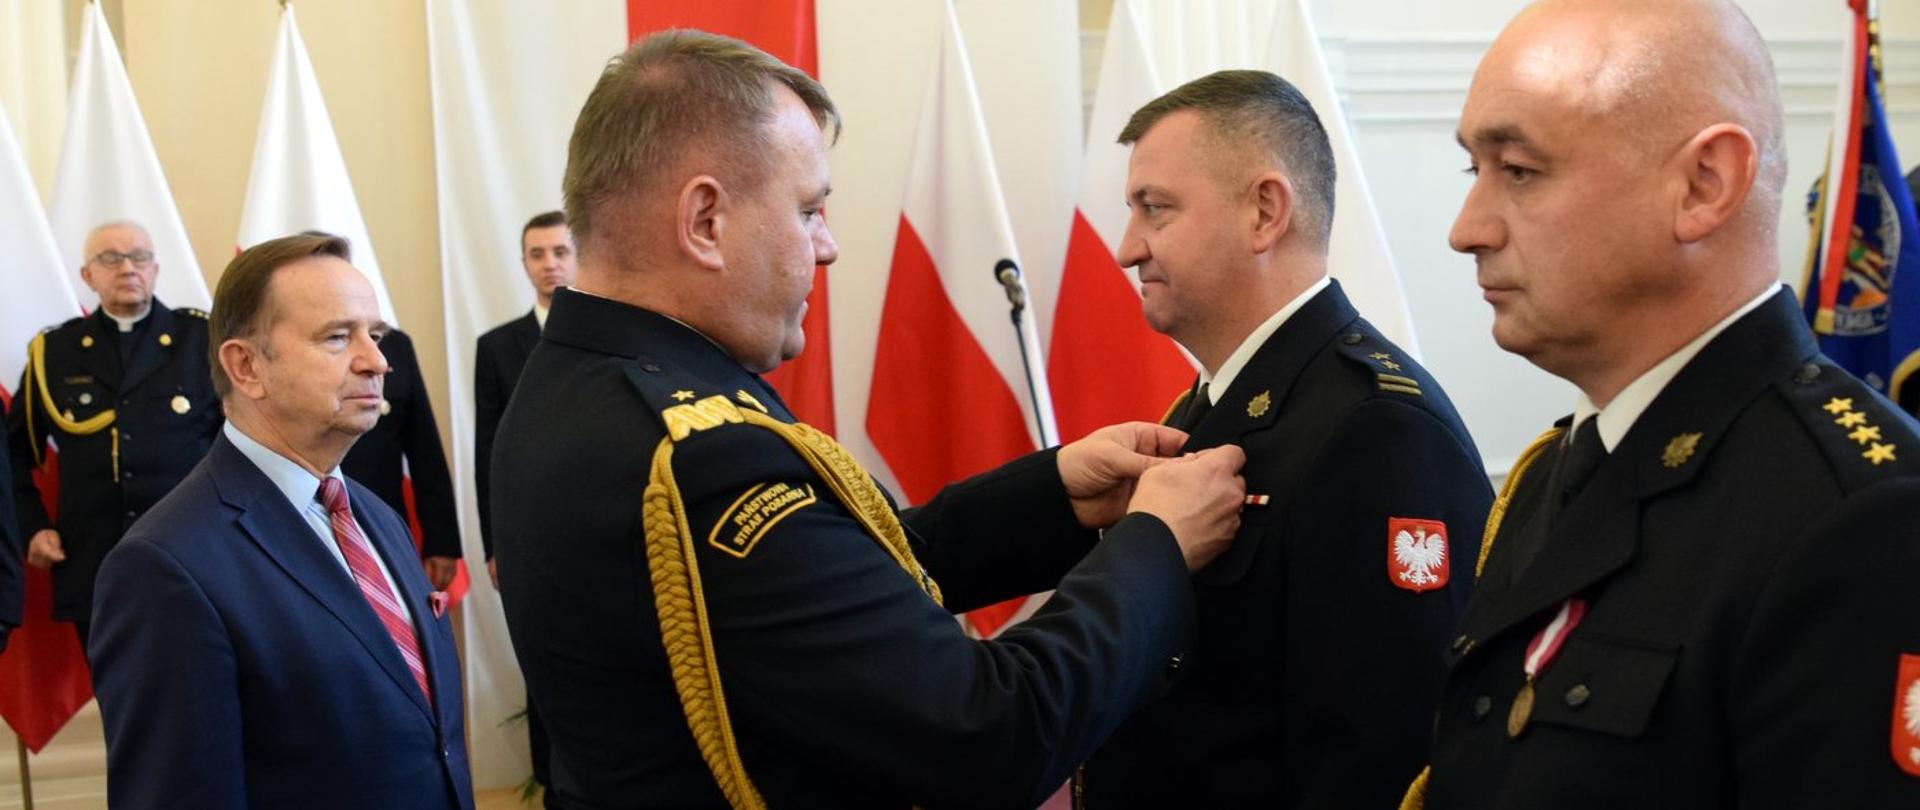 Zdjęcie zrobione w pomieszczeniu. Strażak w mundurze generała gratuluje funkcjonariuszowi awansu.